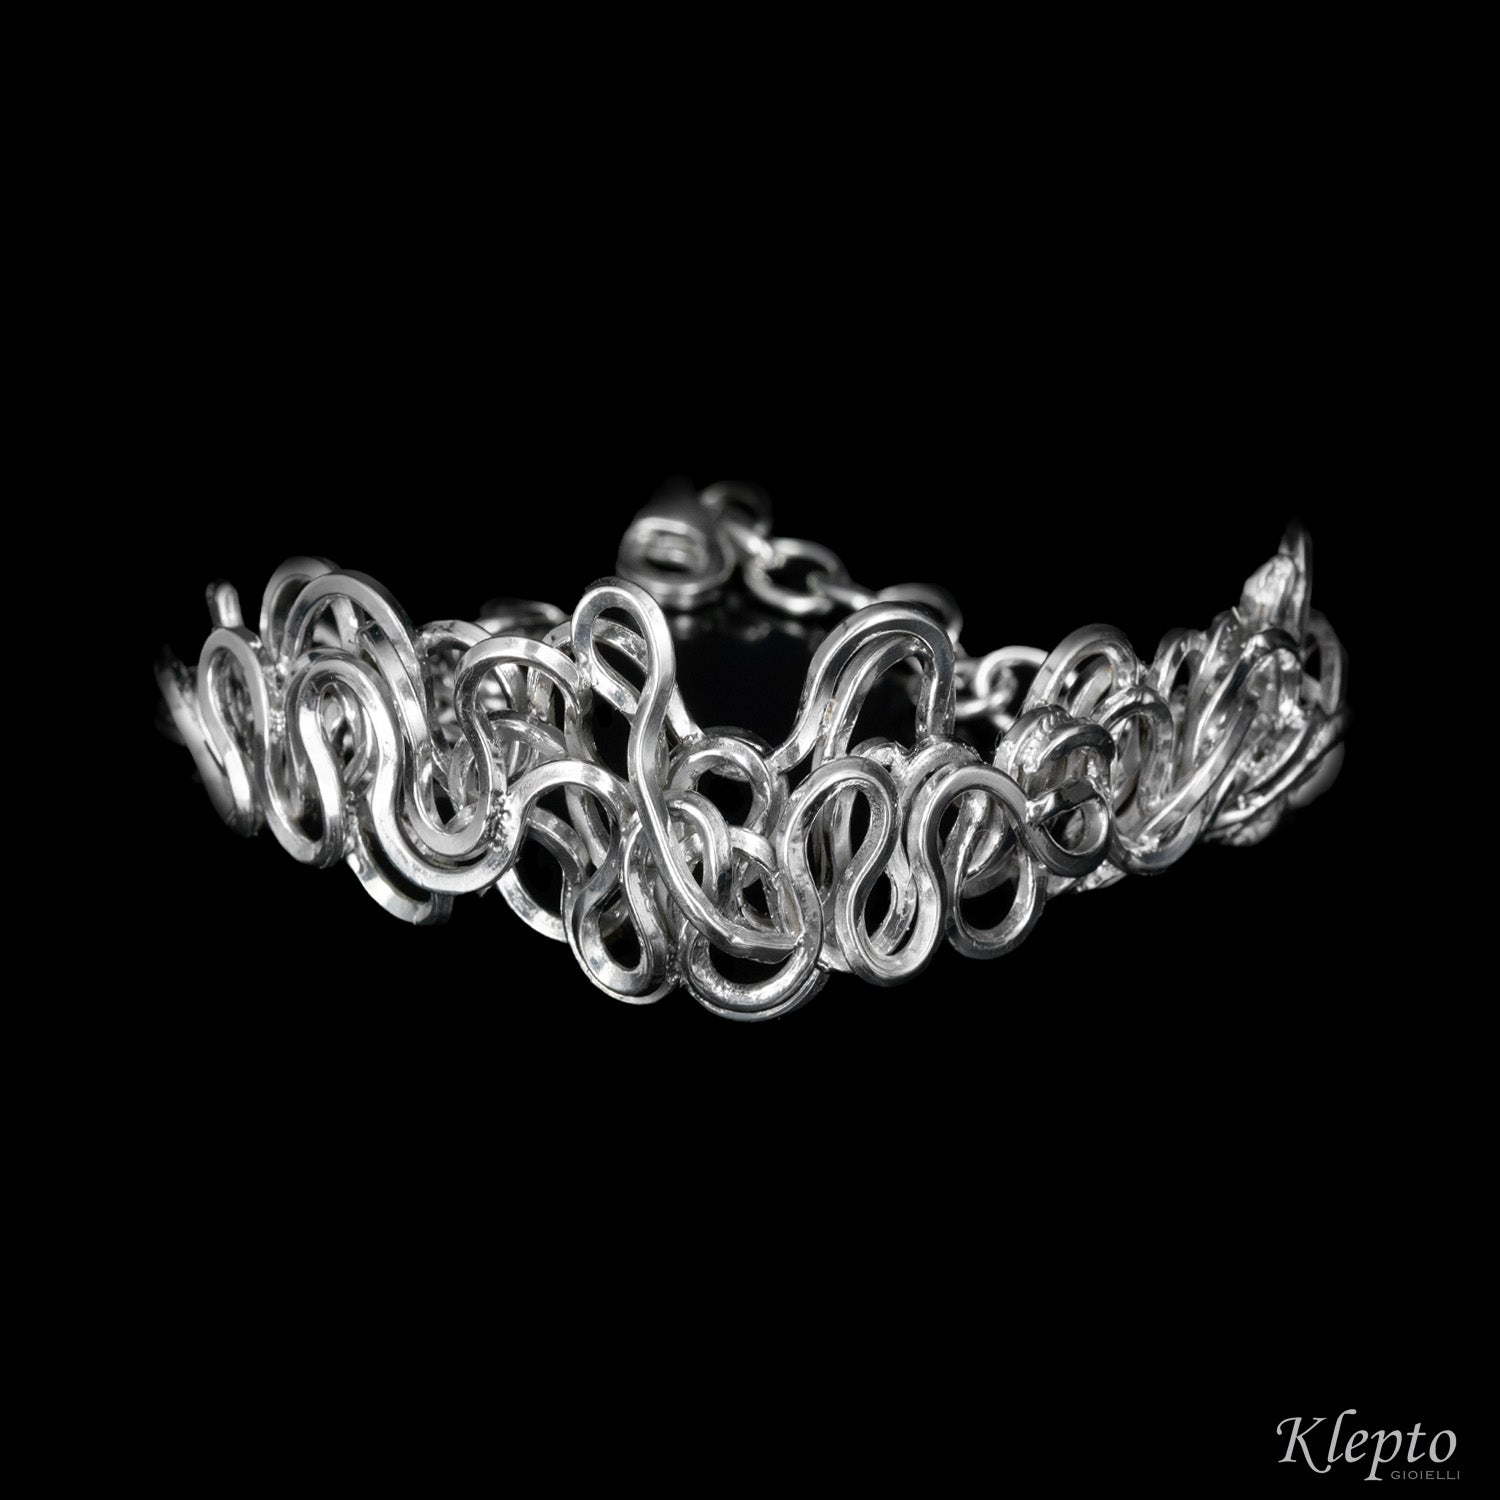 Silnova® silver bracelet with braided wire